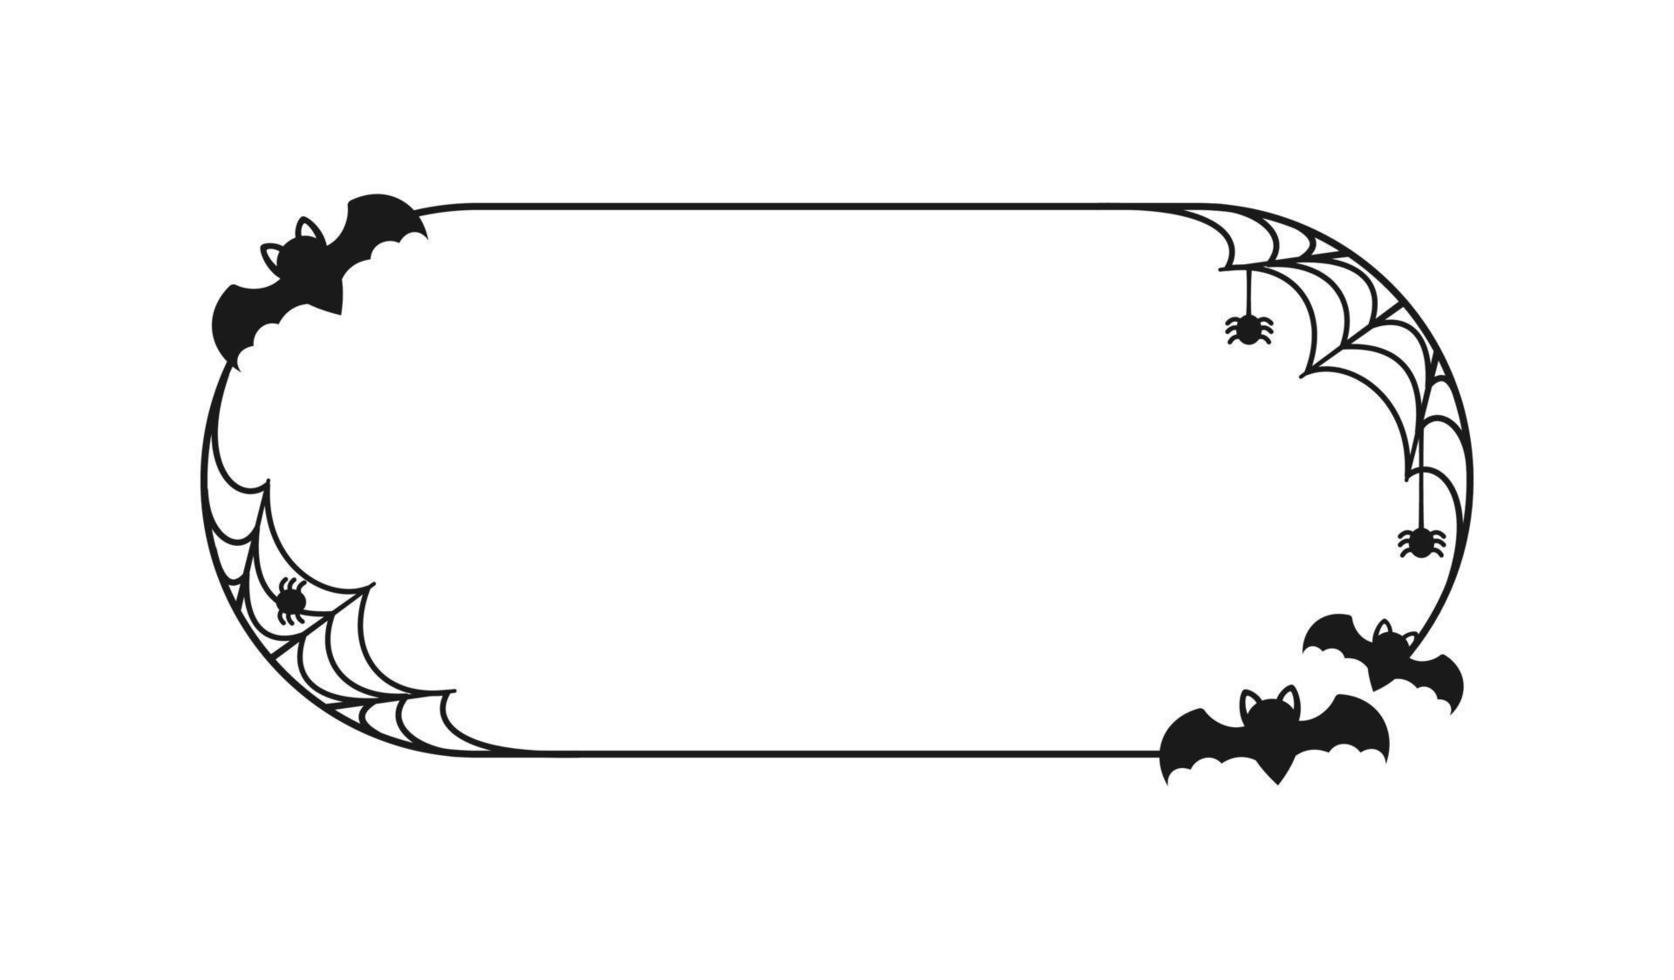 Fledermaus mit Spinnen auf Webrandrahmen. Halloween-Themenrahmen vektor